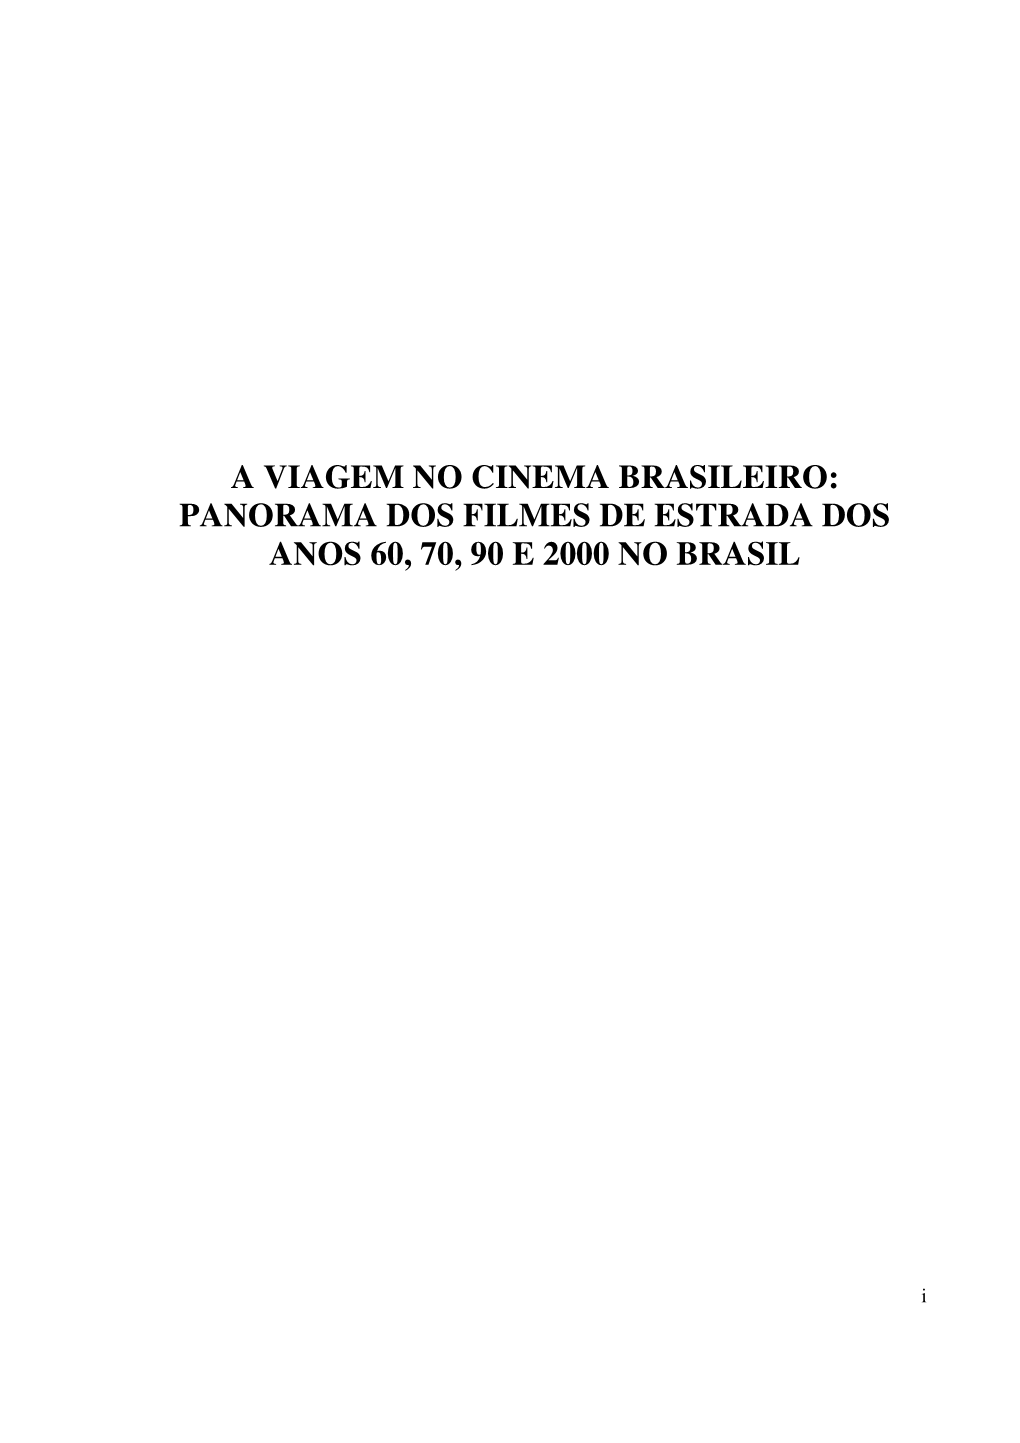 A Viagem No Cinema Brasileiro: Panorama Dos Filmes De Estrada Dos Anos 60, 70, 90 E 2000 No Brasil